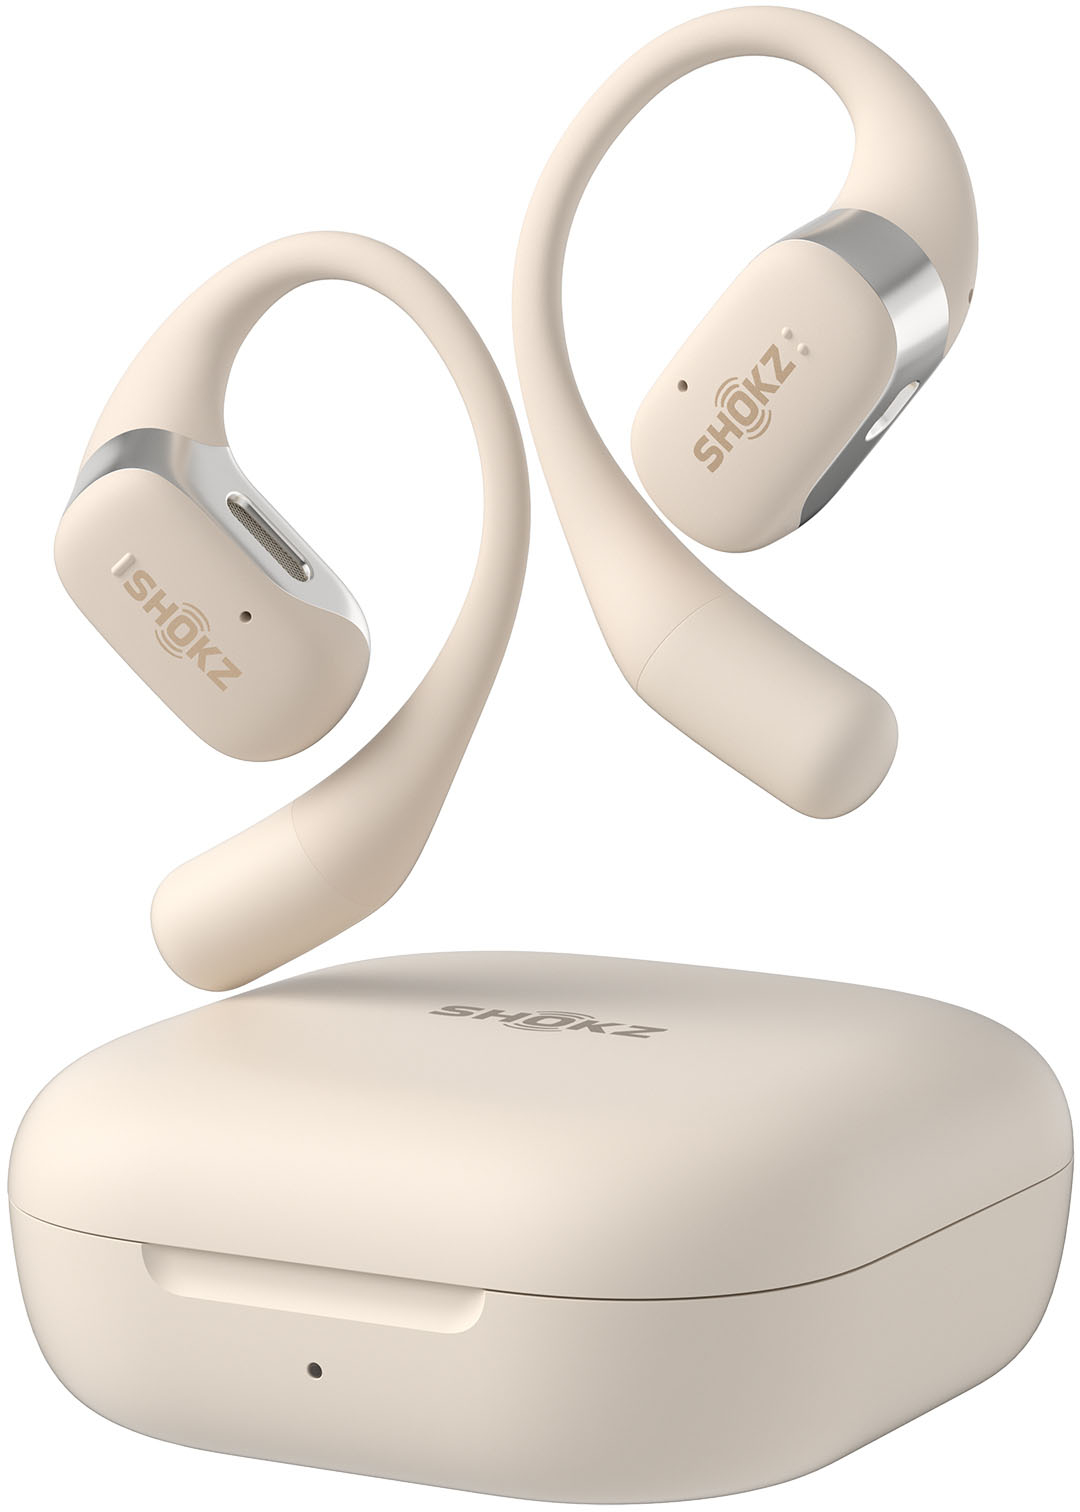 Shokz OpenFit Open-Ear True Wireless Earbuds Beige T910-ST-BG-US - Best Buy